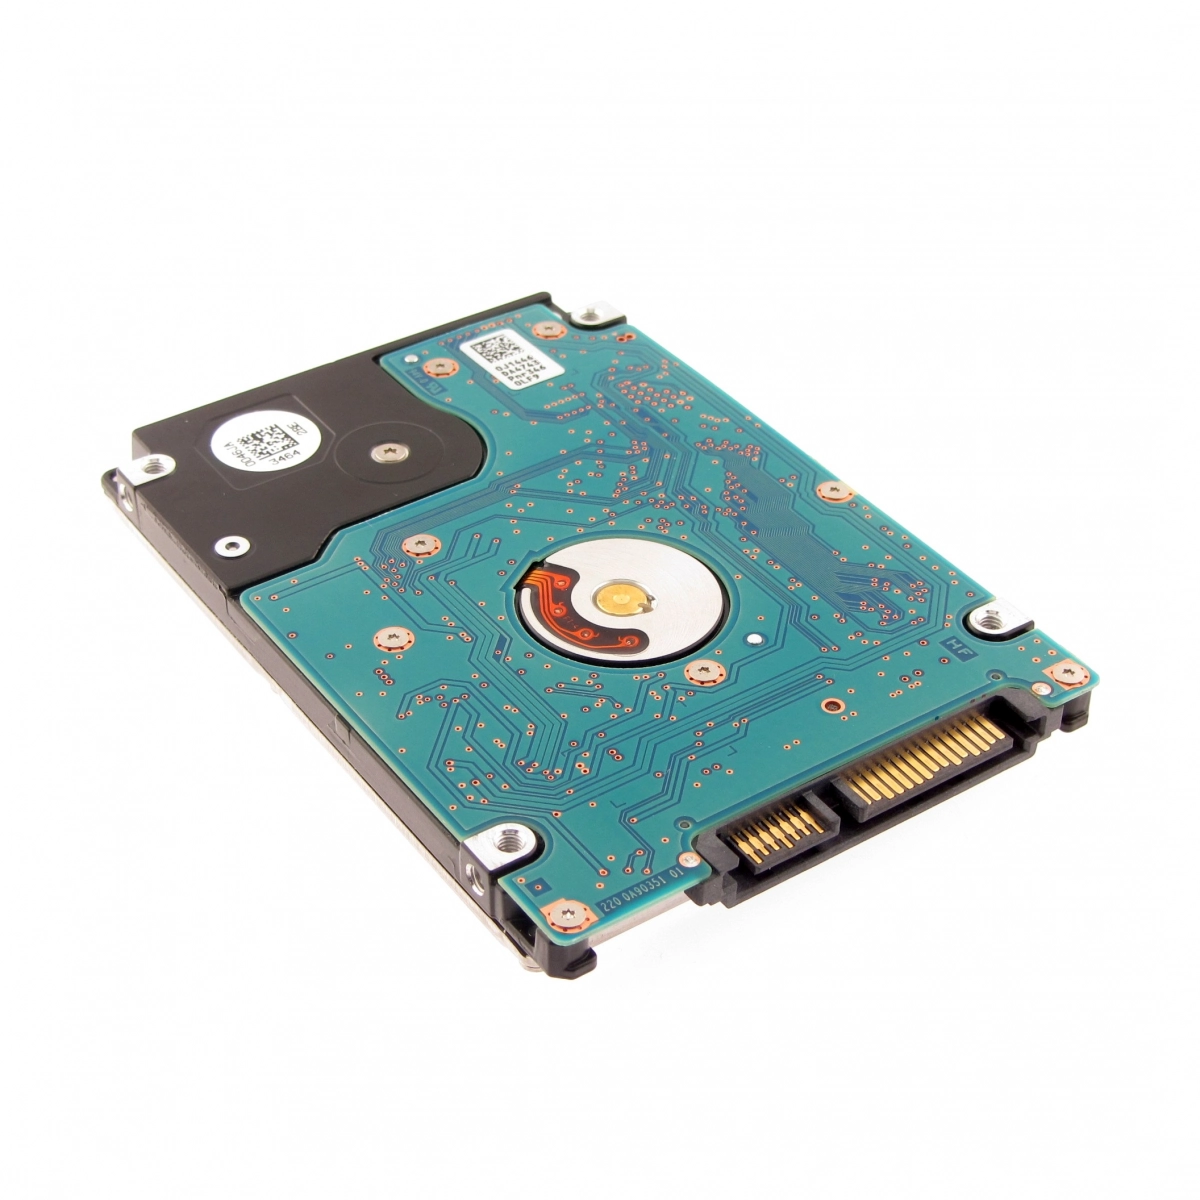 Notebook-Festplatte 1TB, 5400rpm, 128MB für DELL Latitude E6520